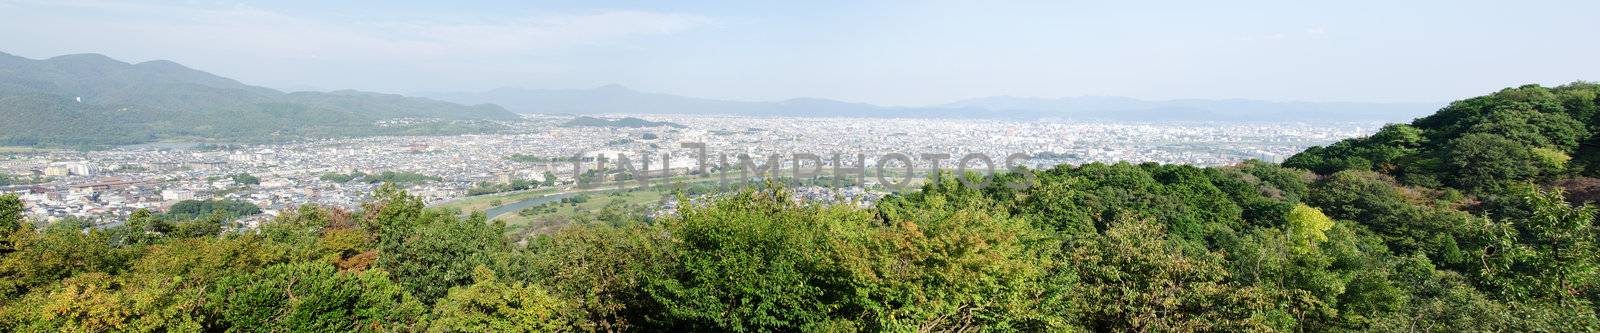 Panorama view of Arashiyama by Arrxxx